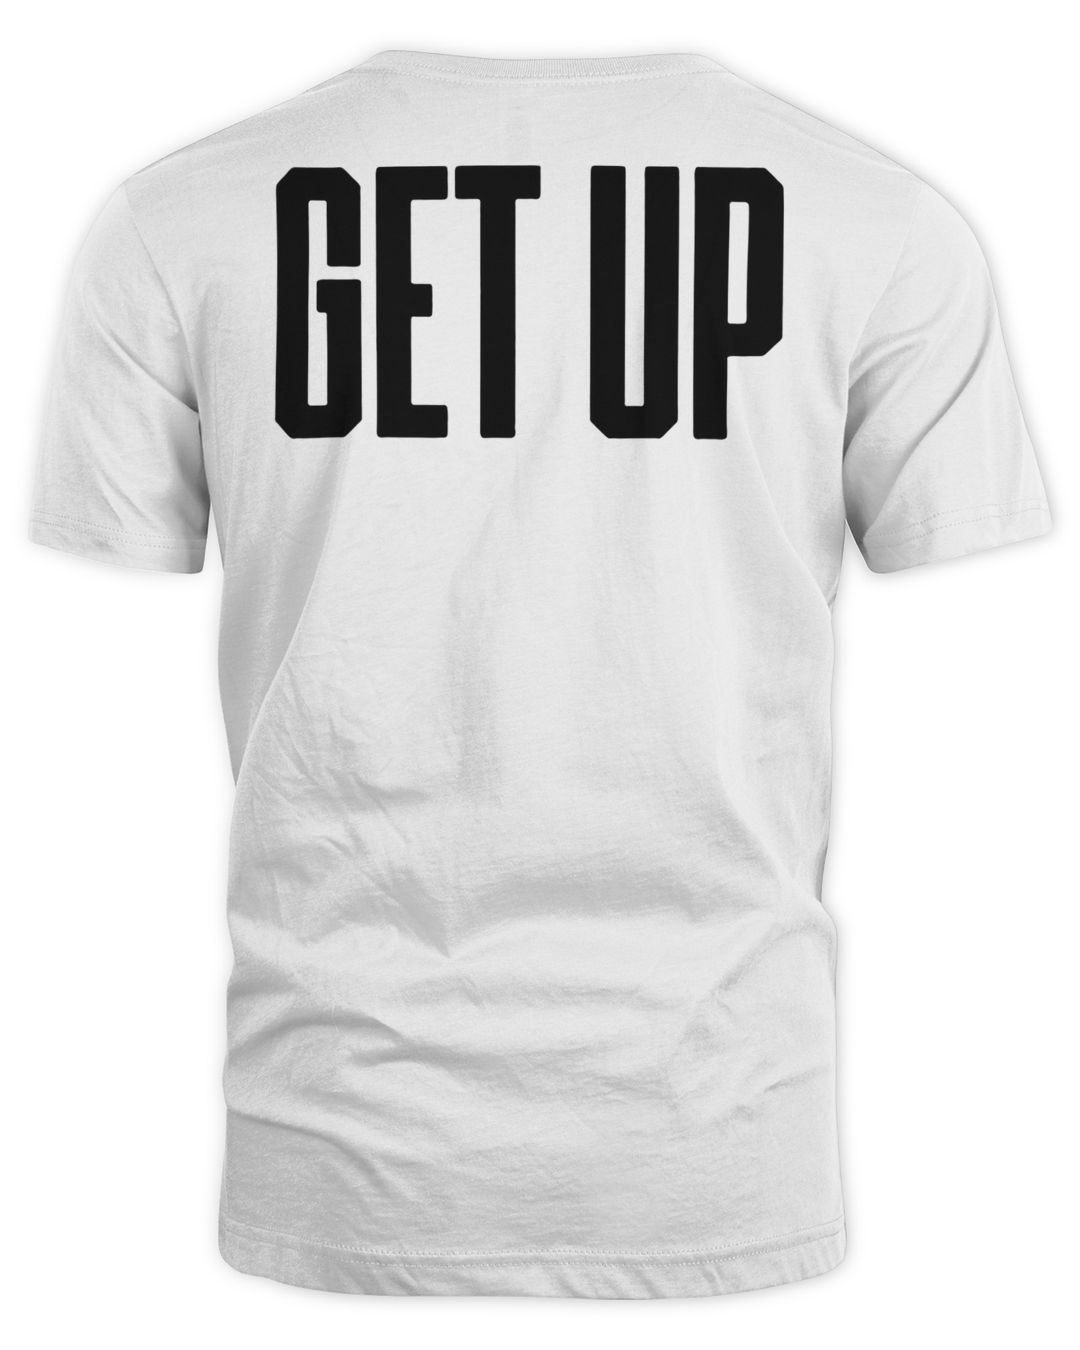 T Pain Merch Get Up Group Shirt